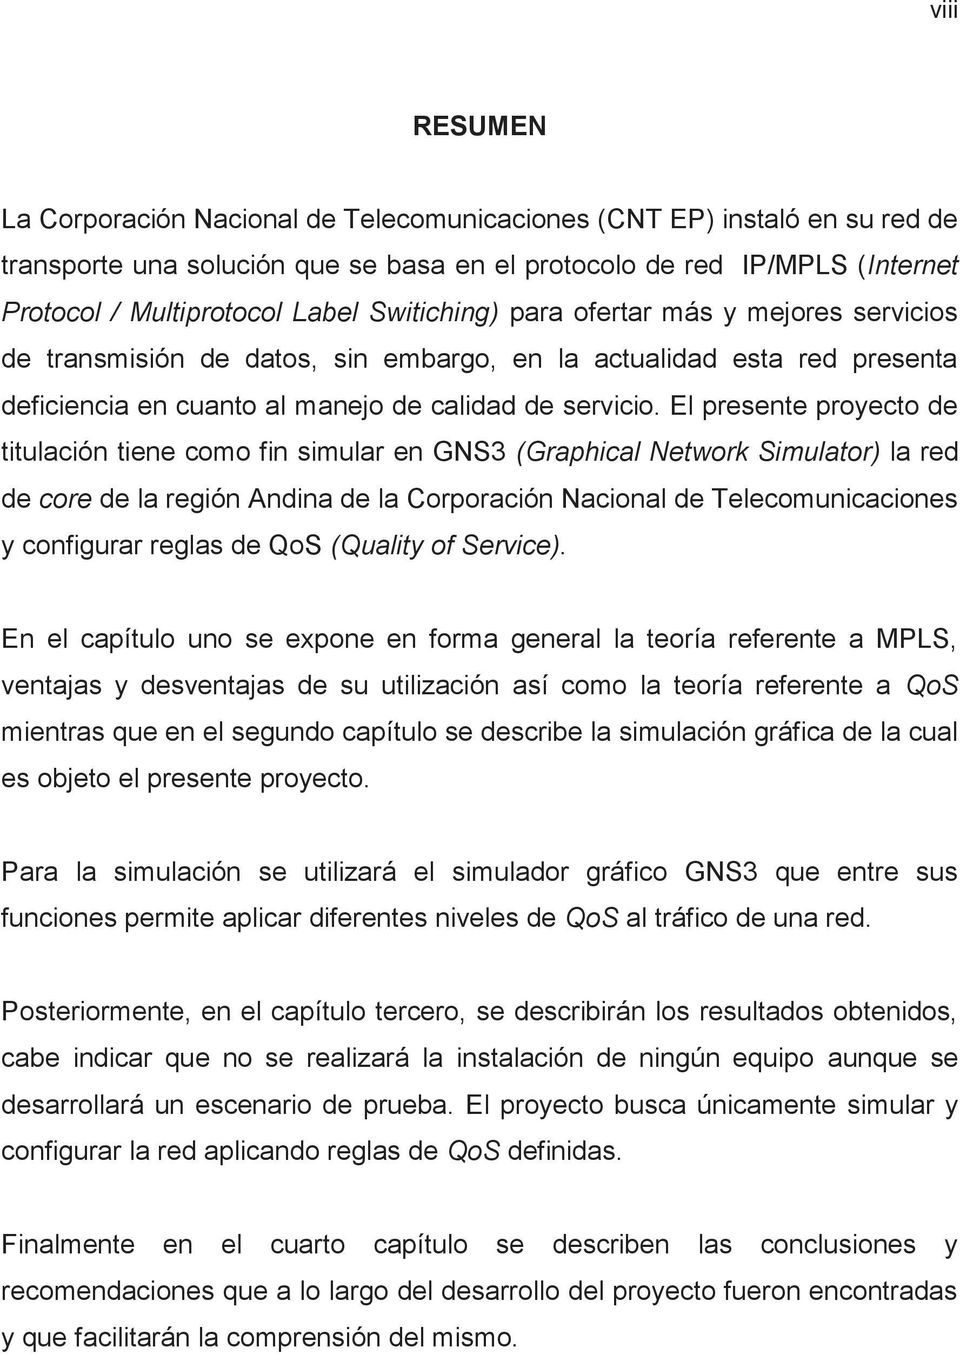 El presente proyecto de titulación tiene como fin simular en GNS3 (Graphical Network Simulator) la red de core de la región Andina de la Corporación Nacional de Telecomunicaciones y configurar reglas